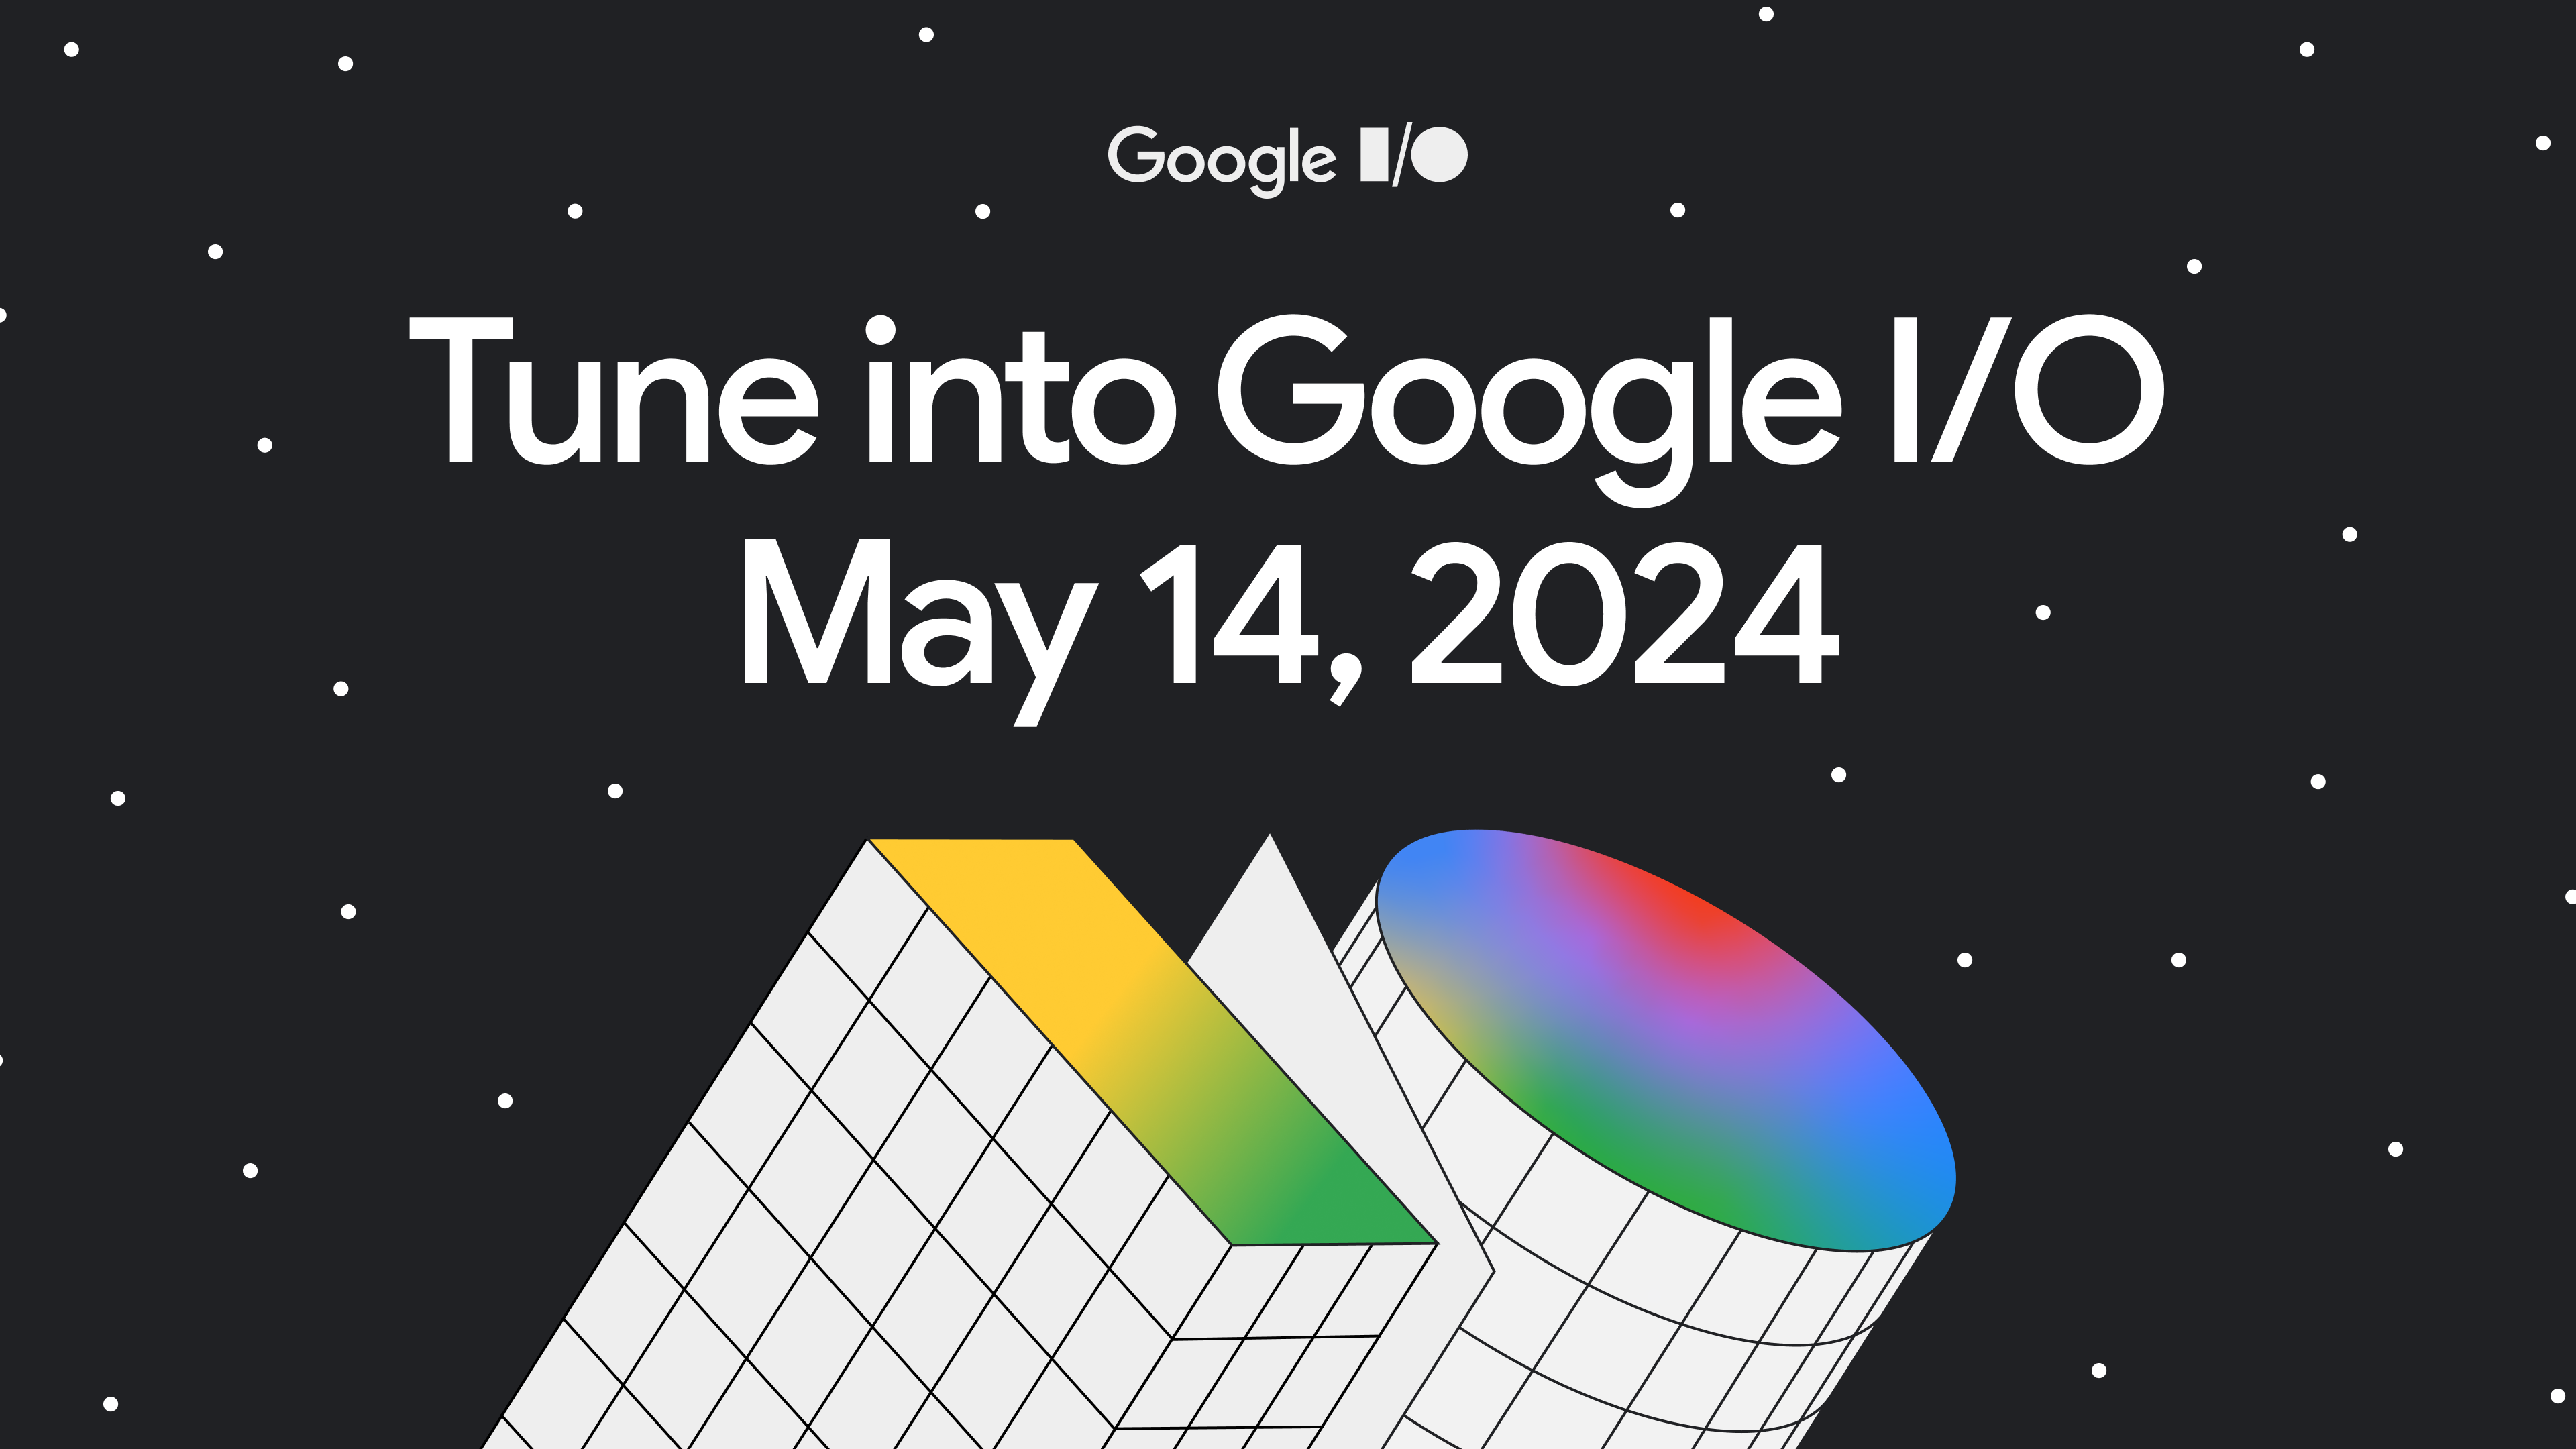 幾何学的な抽象的なカラフルな数字が描かれた黒い背景のイラスト。バナーには「Google I/O にご参加ください。2024 年 5 月 14 日